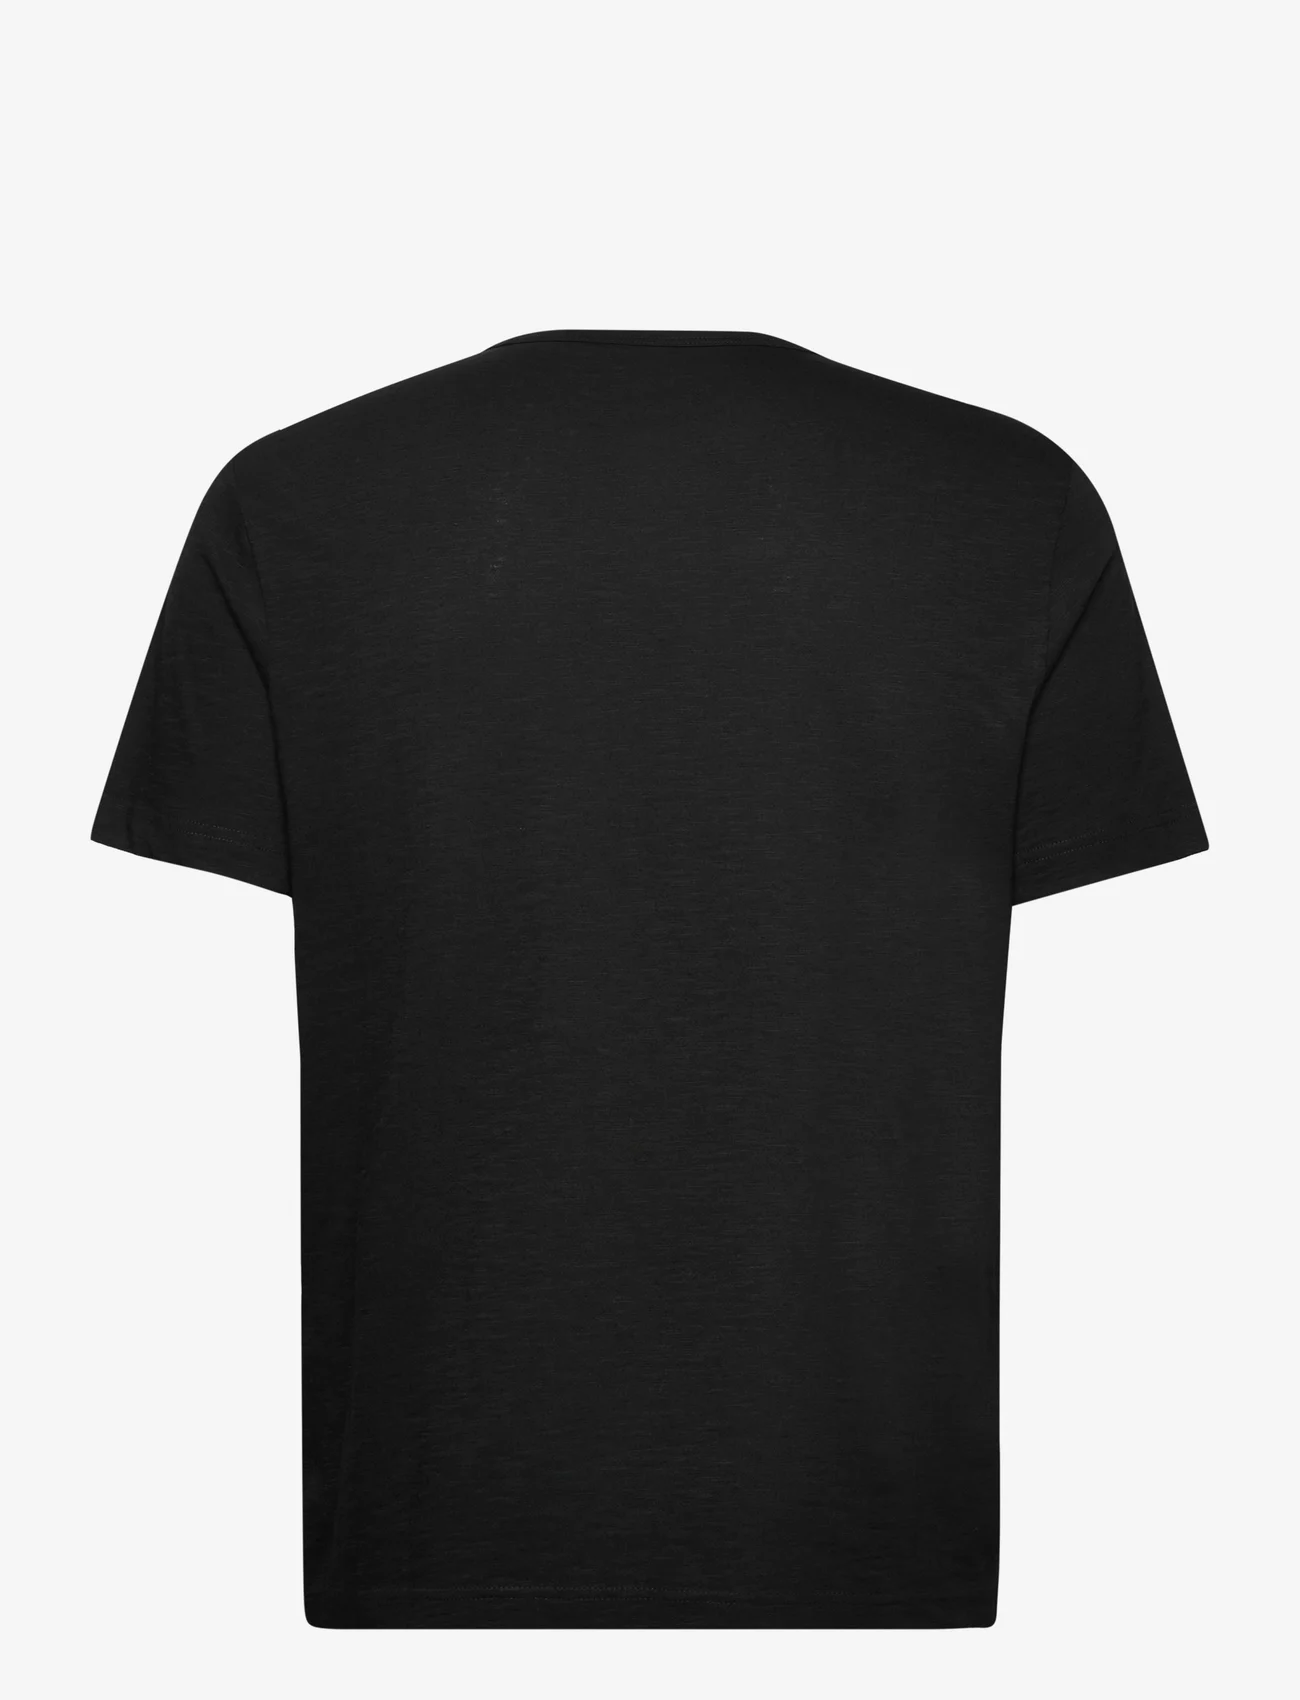 Tom Tailor - printed t-shirt - lägsta priserna - black - 1